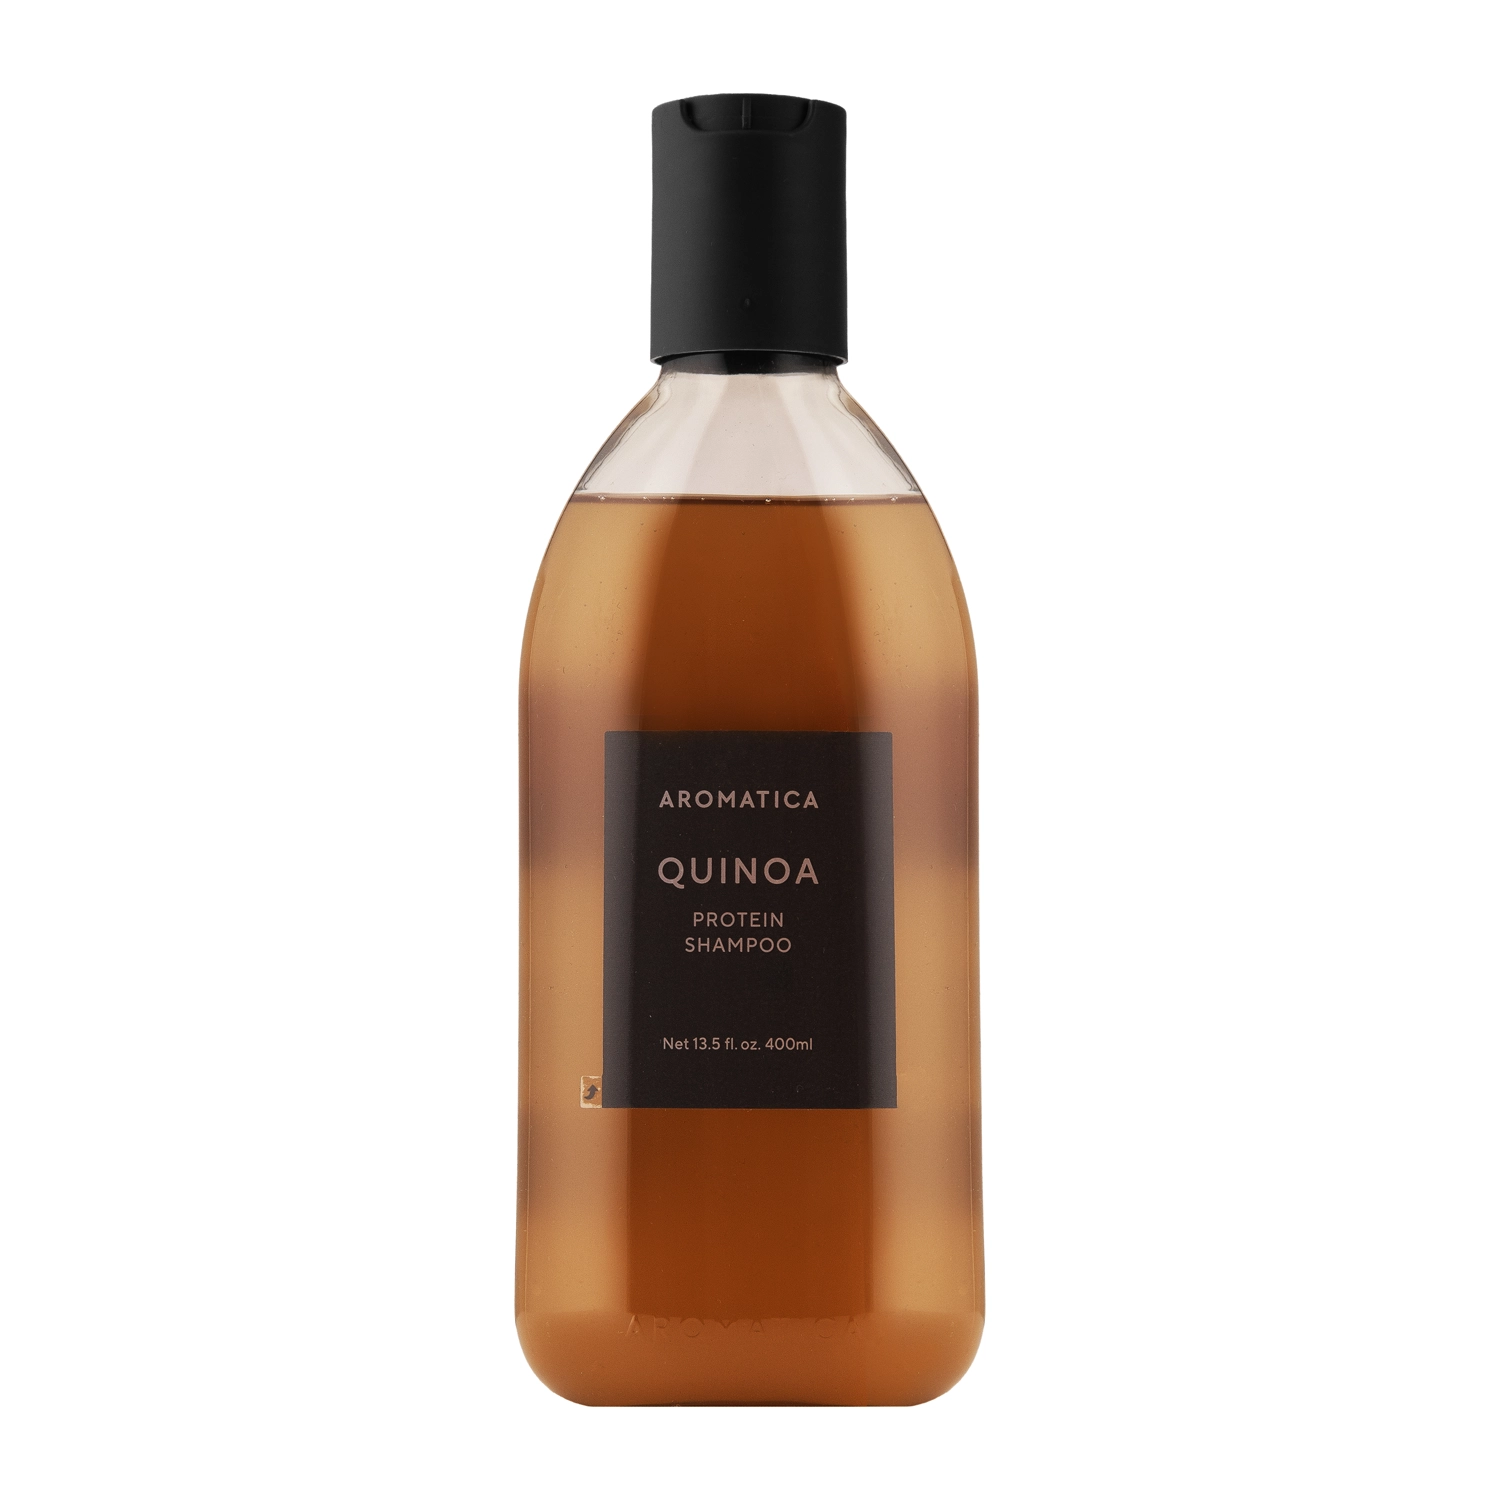 Aromatica - Quinoa Protein Shampoo - Protein-Shampoo - 400ml